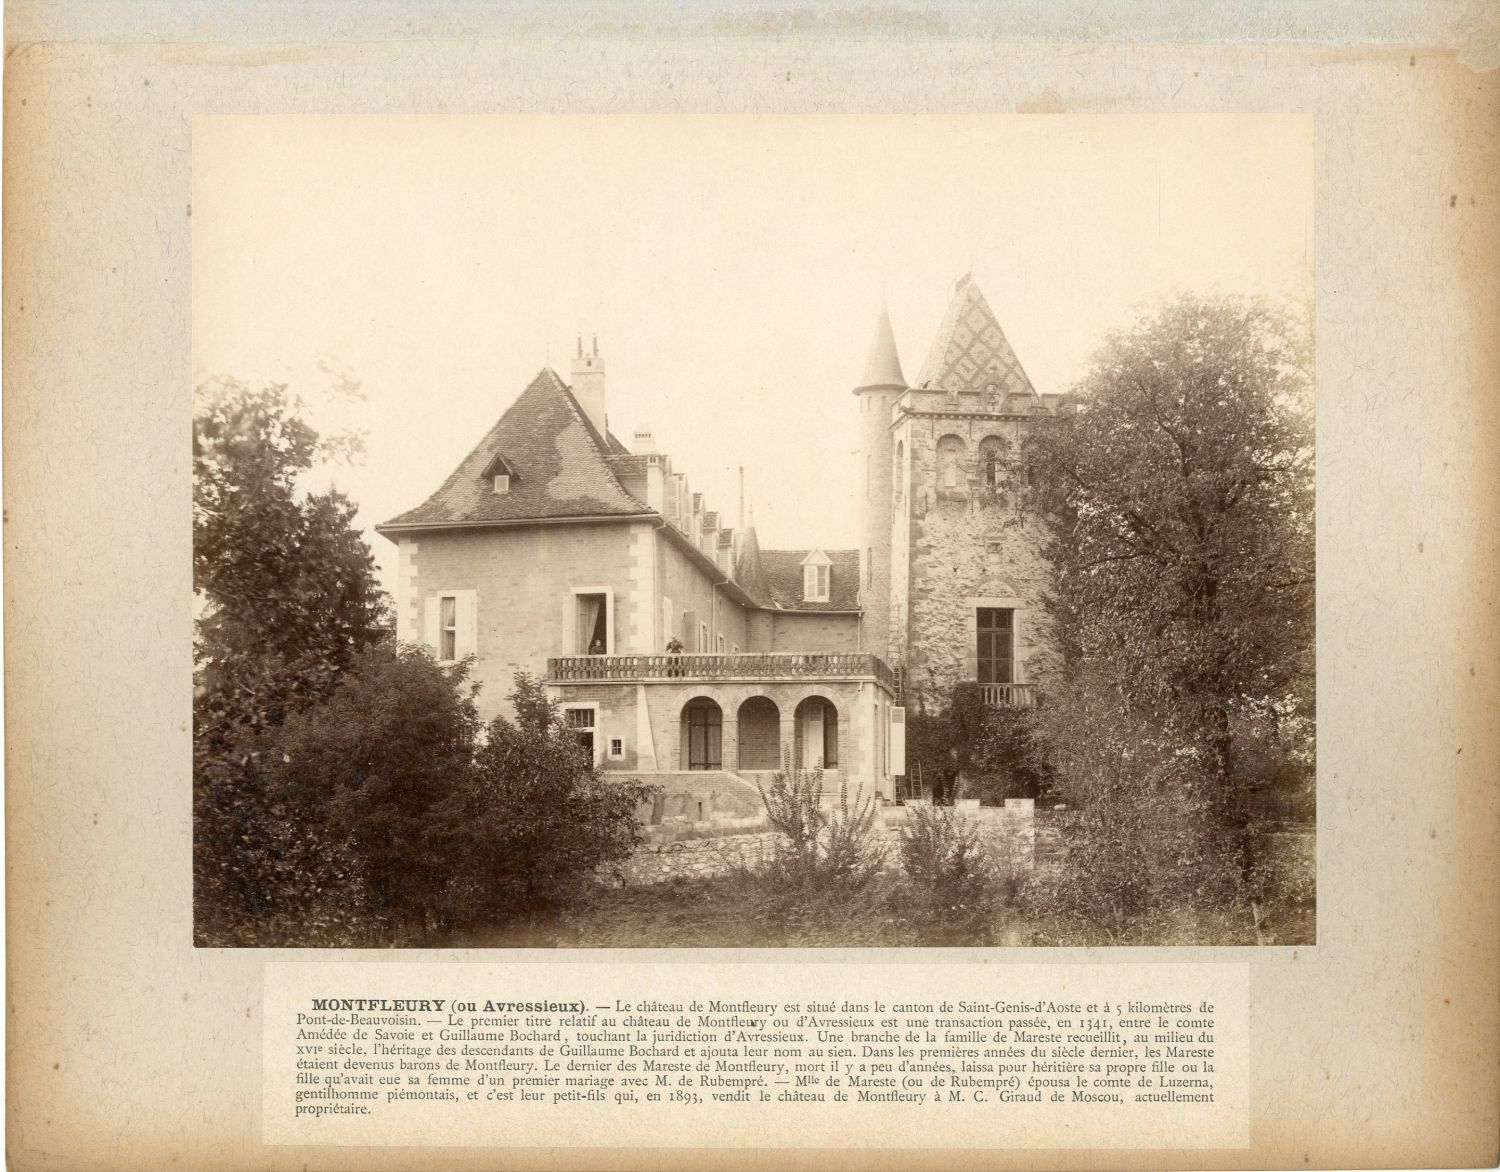 France, Saint-Genis-d'Aosta, Château Montfleury, Avressieux Vintage Album